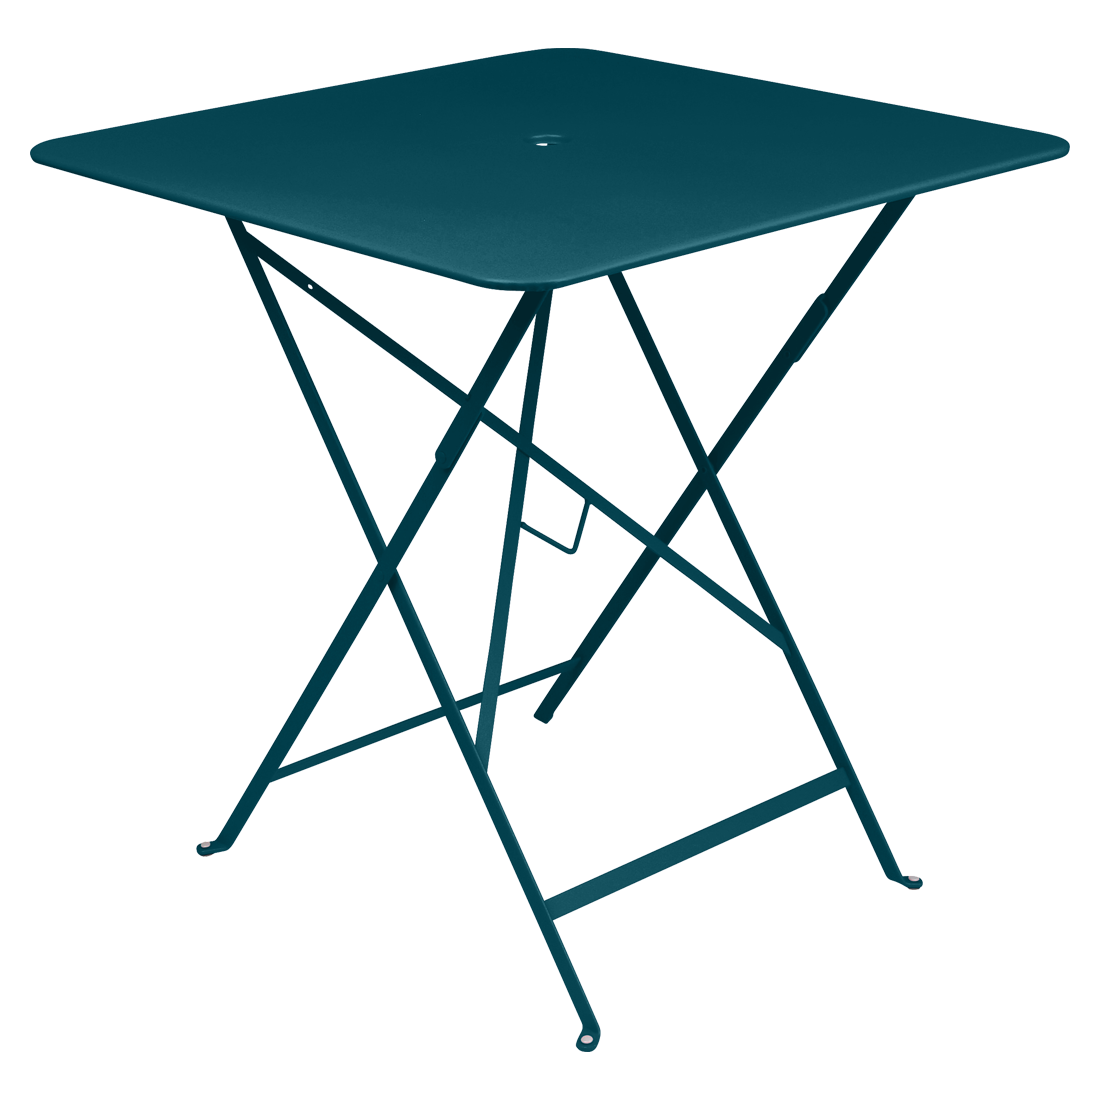 Modrý kovový skládací stůl Fermob Bistro